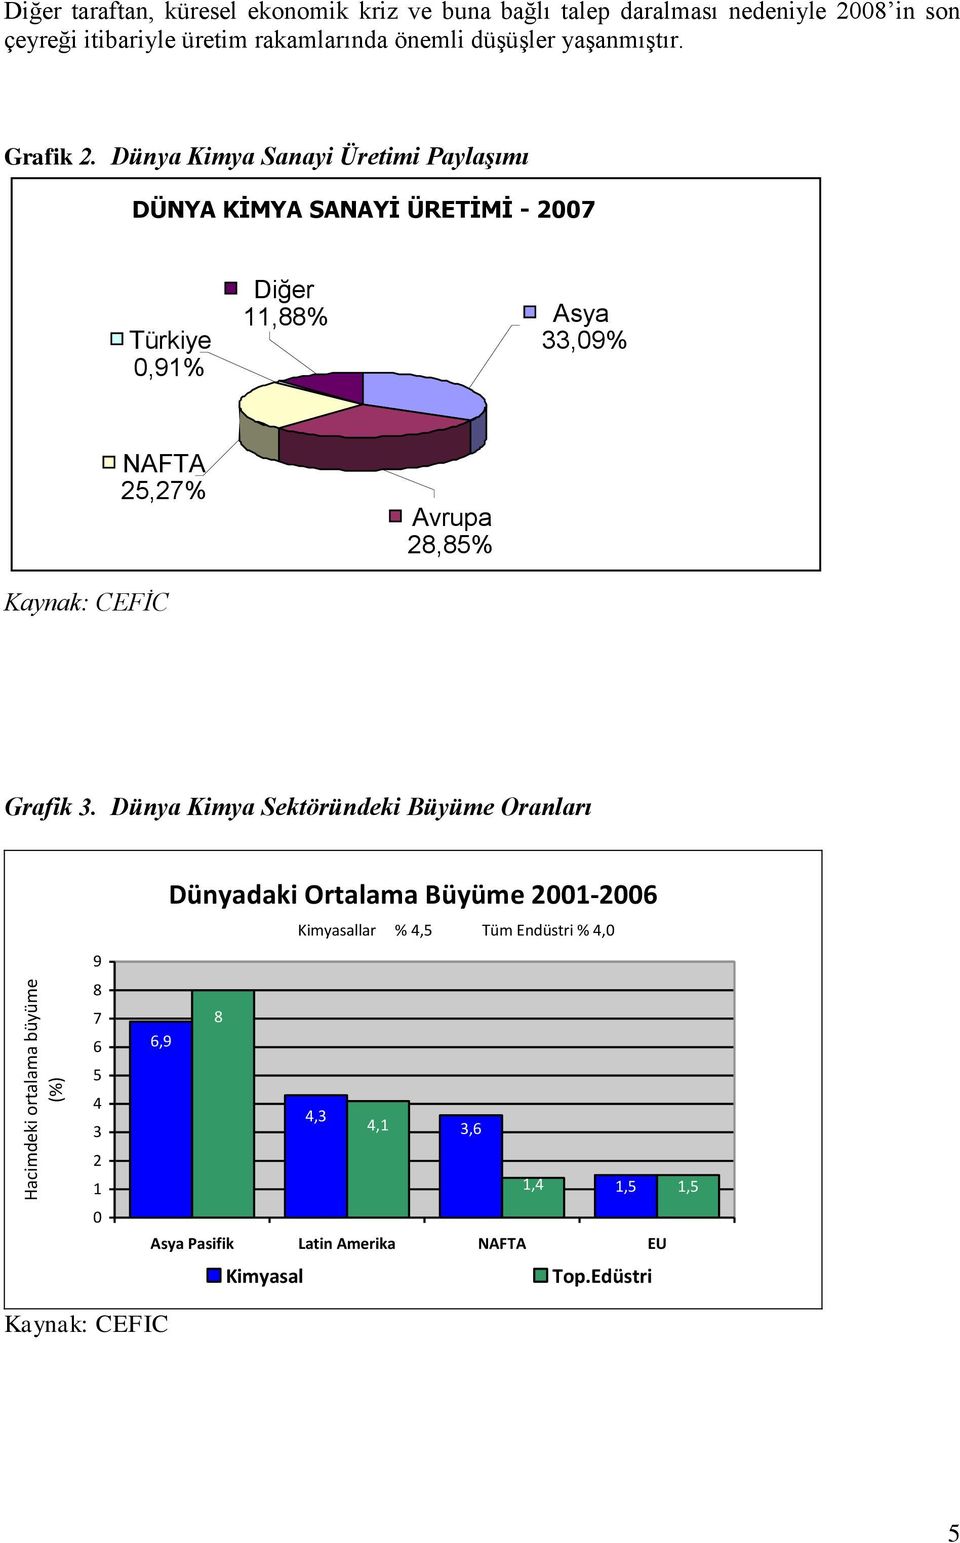 Dünya Kimya Sanayi Üretimi Paylaşımı DÜNYA KİMYA SANAYİ ÜRETİMİ - 2007 Türkiye 0,91% Diğer 11,88% Asya 33,09% NAFTA 25,27% Avrupa 28,85% Kaynak: